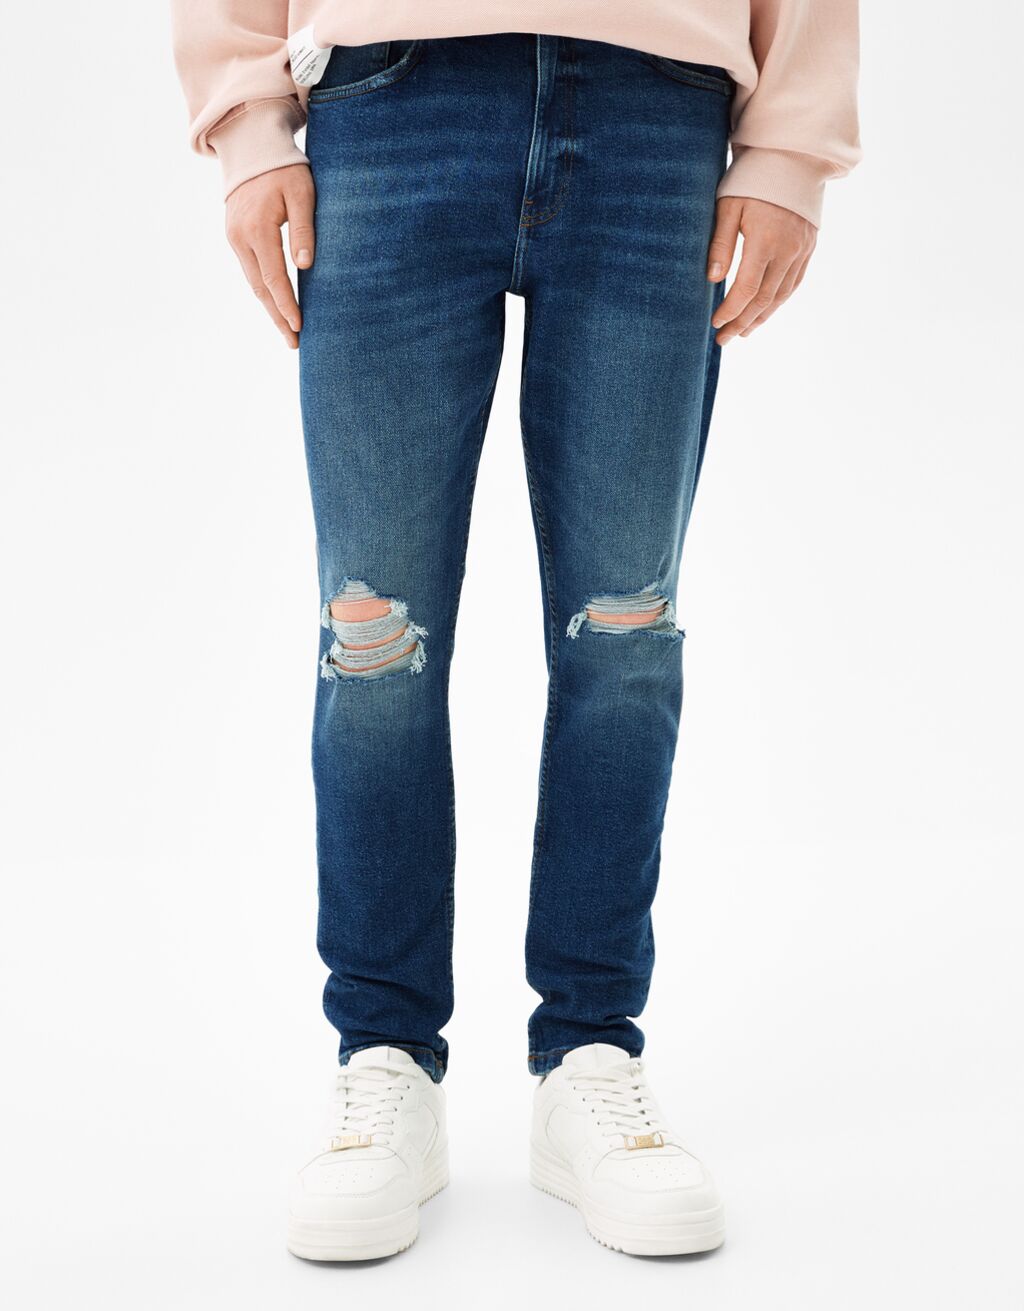 ג'ינס בגזרת Carrot fit עם קרעים